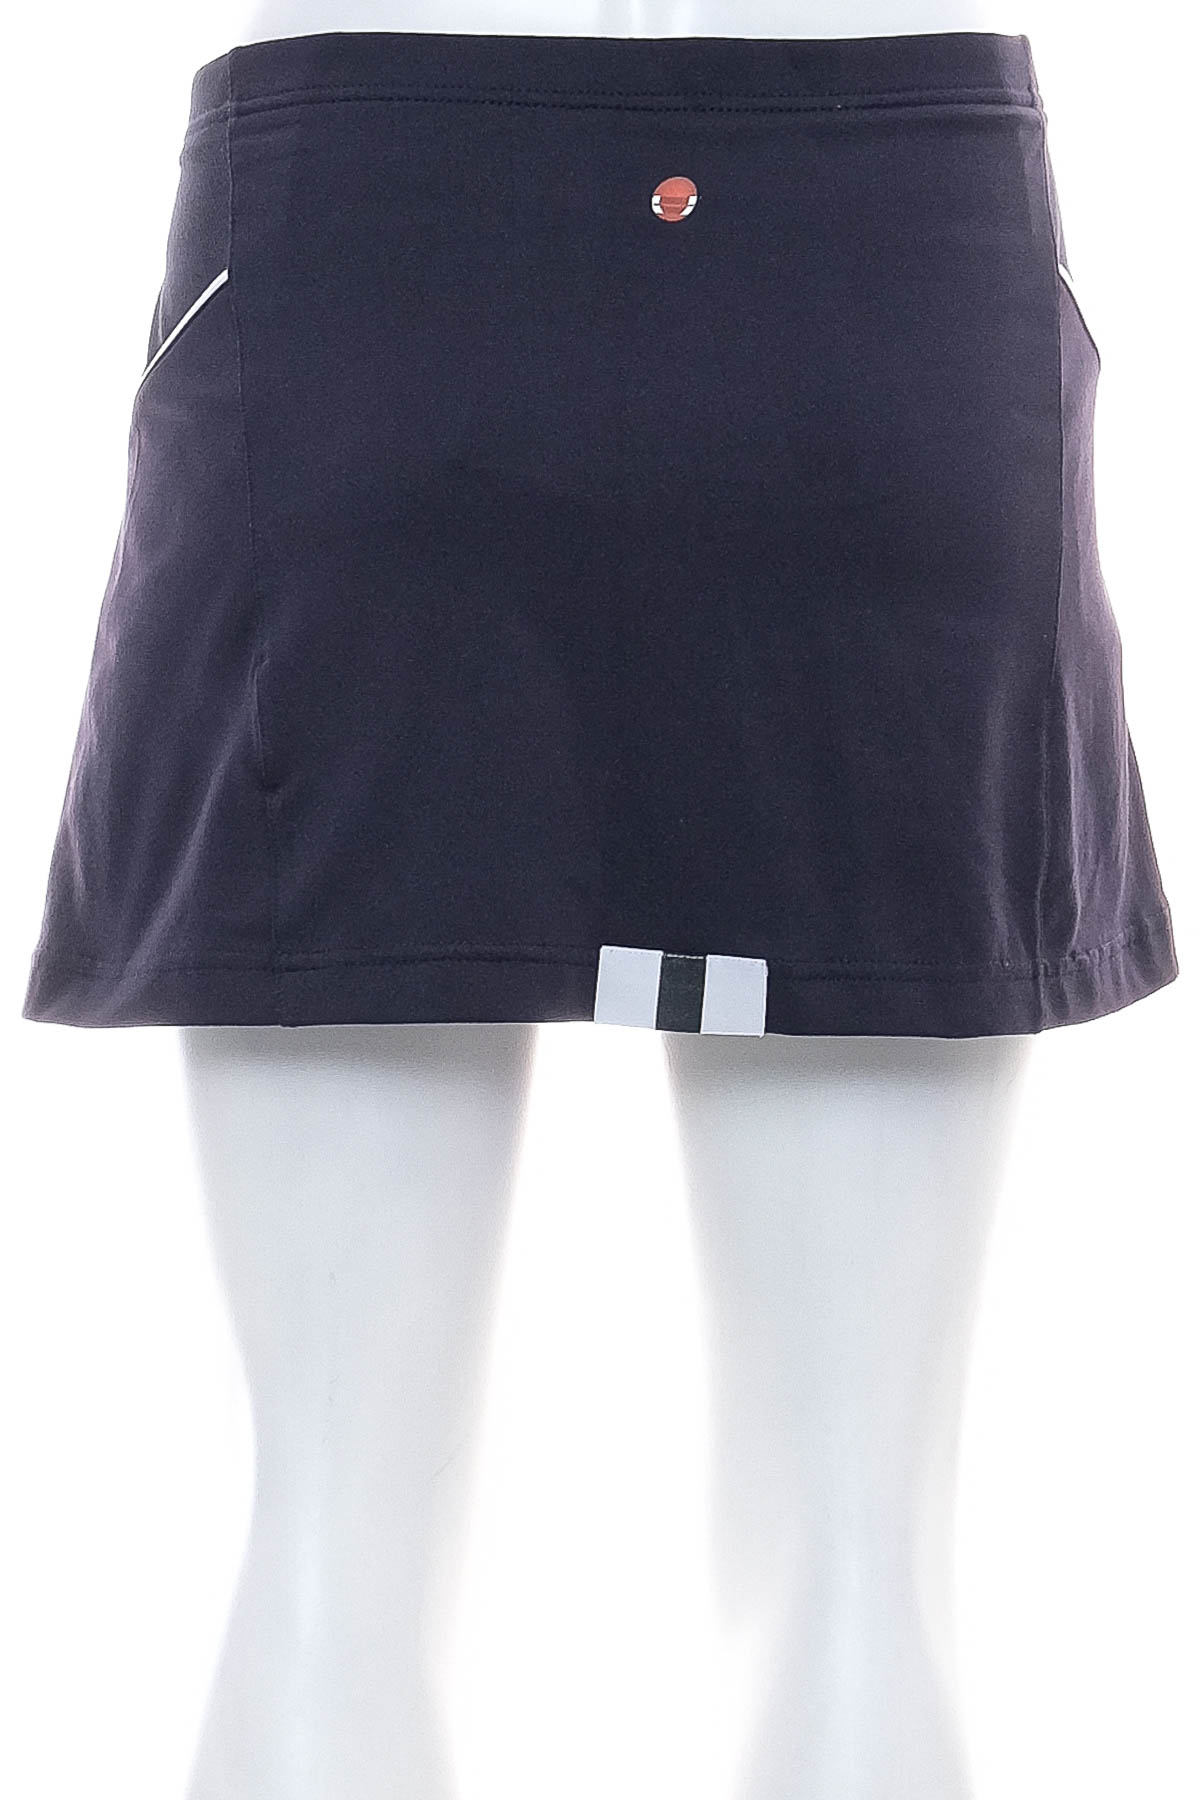 Spodnie spódnicowe - Babolat - 1